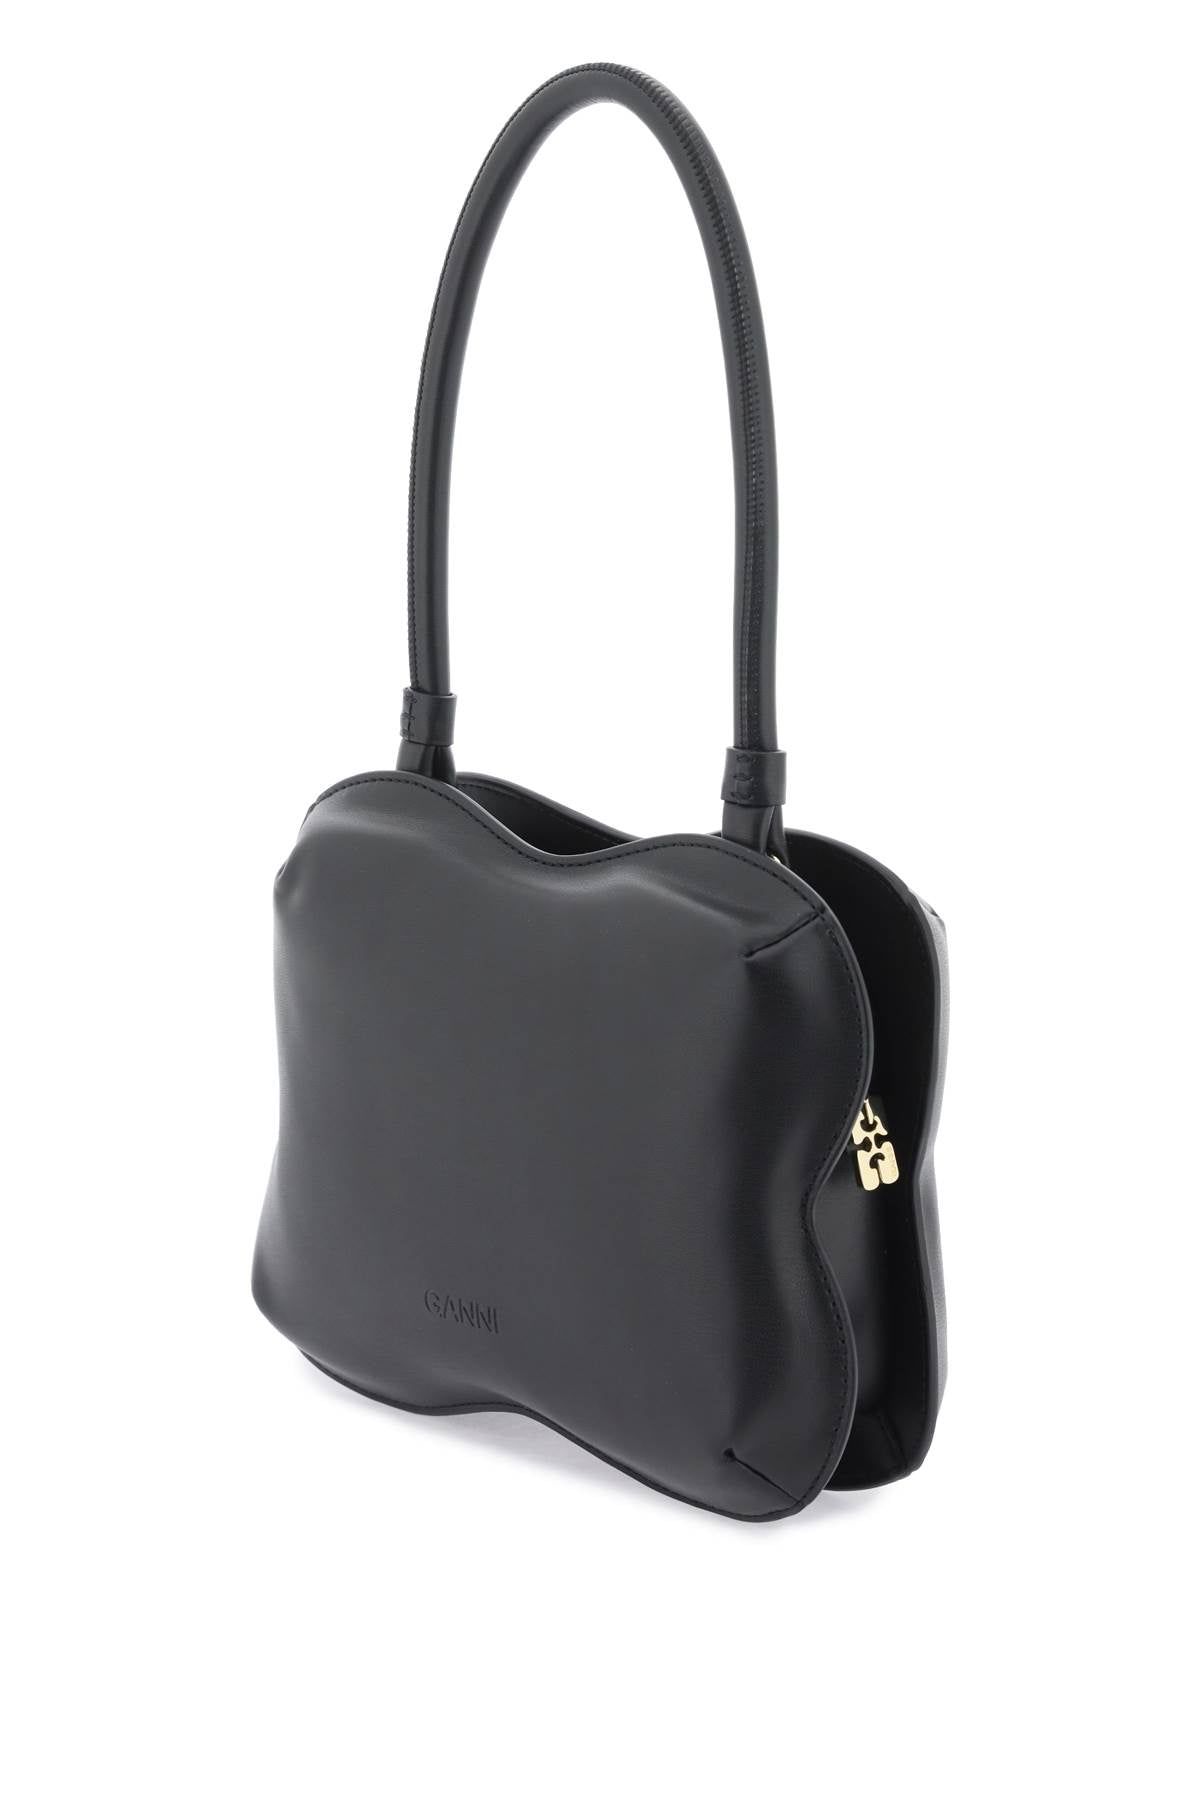 Ganni butterfly handbag-1